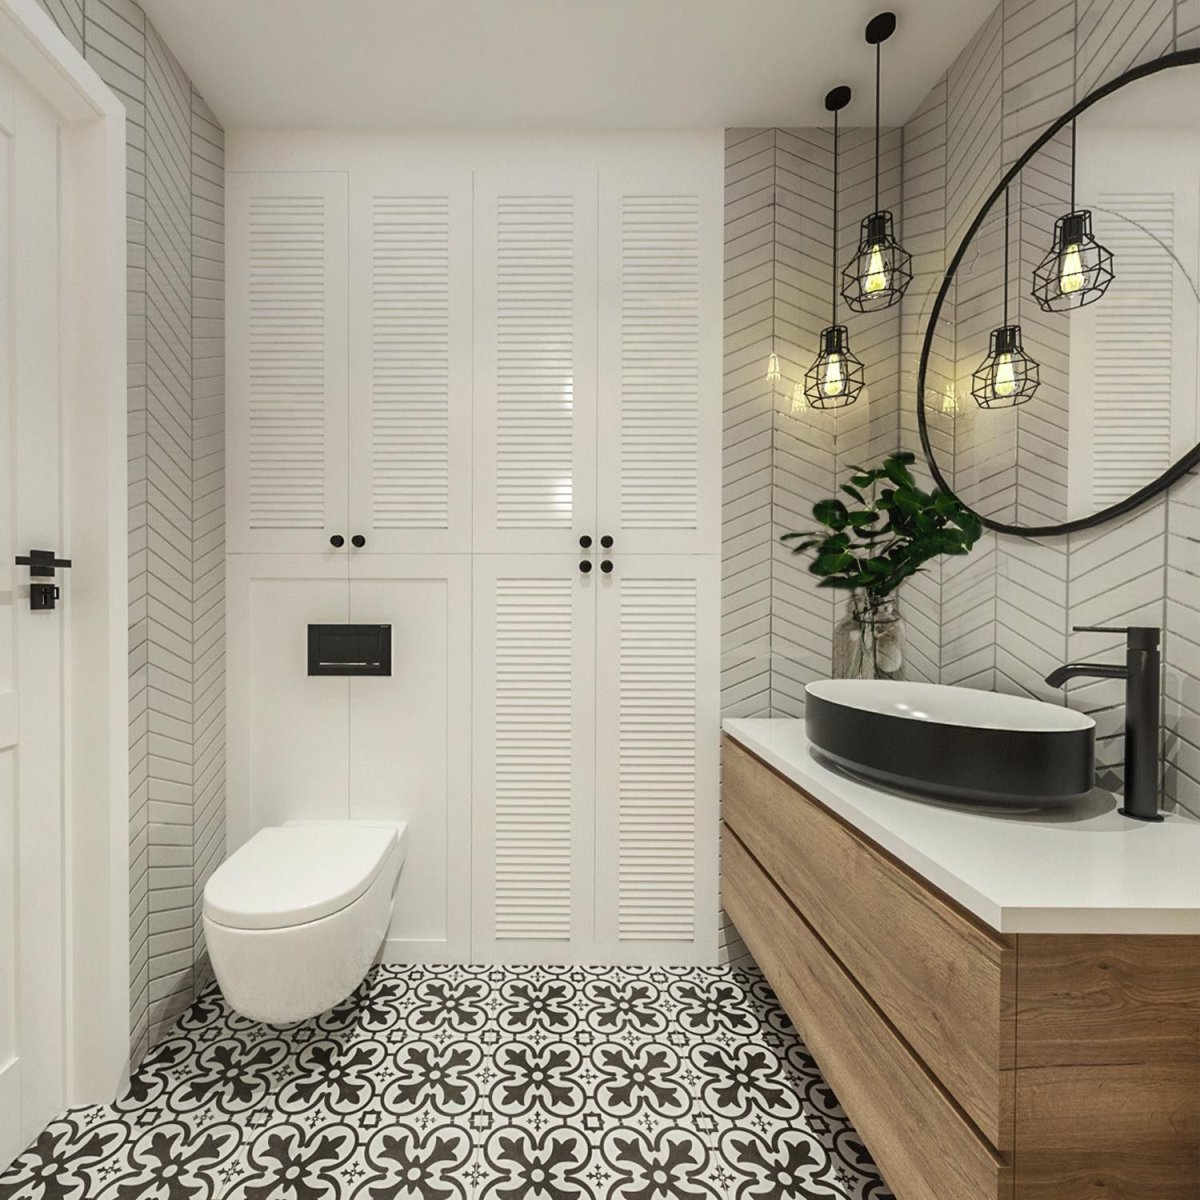 Ванная комната в скандинавском стиле (60 фото): дизайн интерьера, идеи для ремонта - houser.su